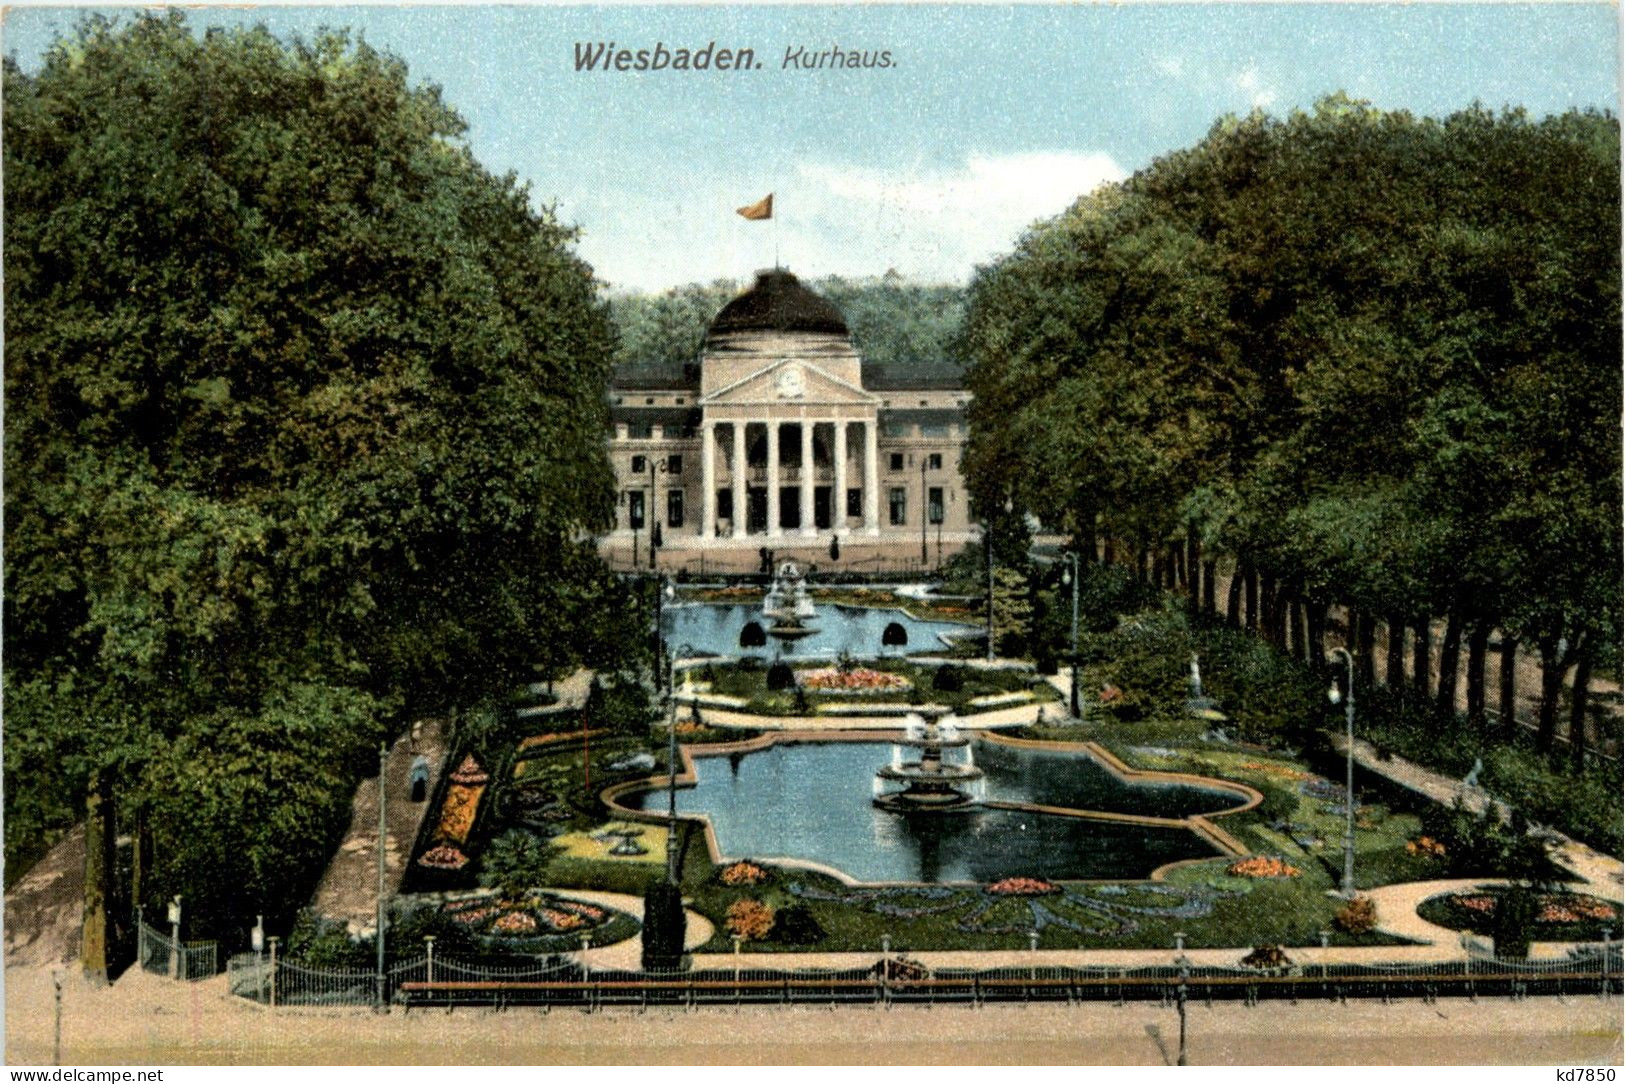 Wiesbaden - Kurhaus - Wiesbaden